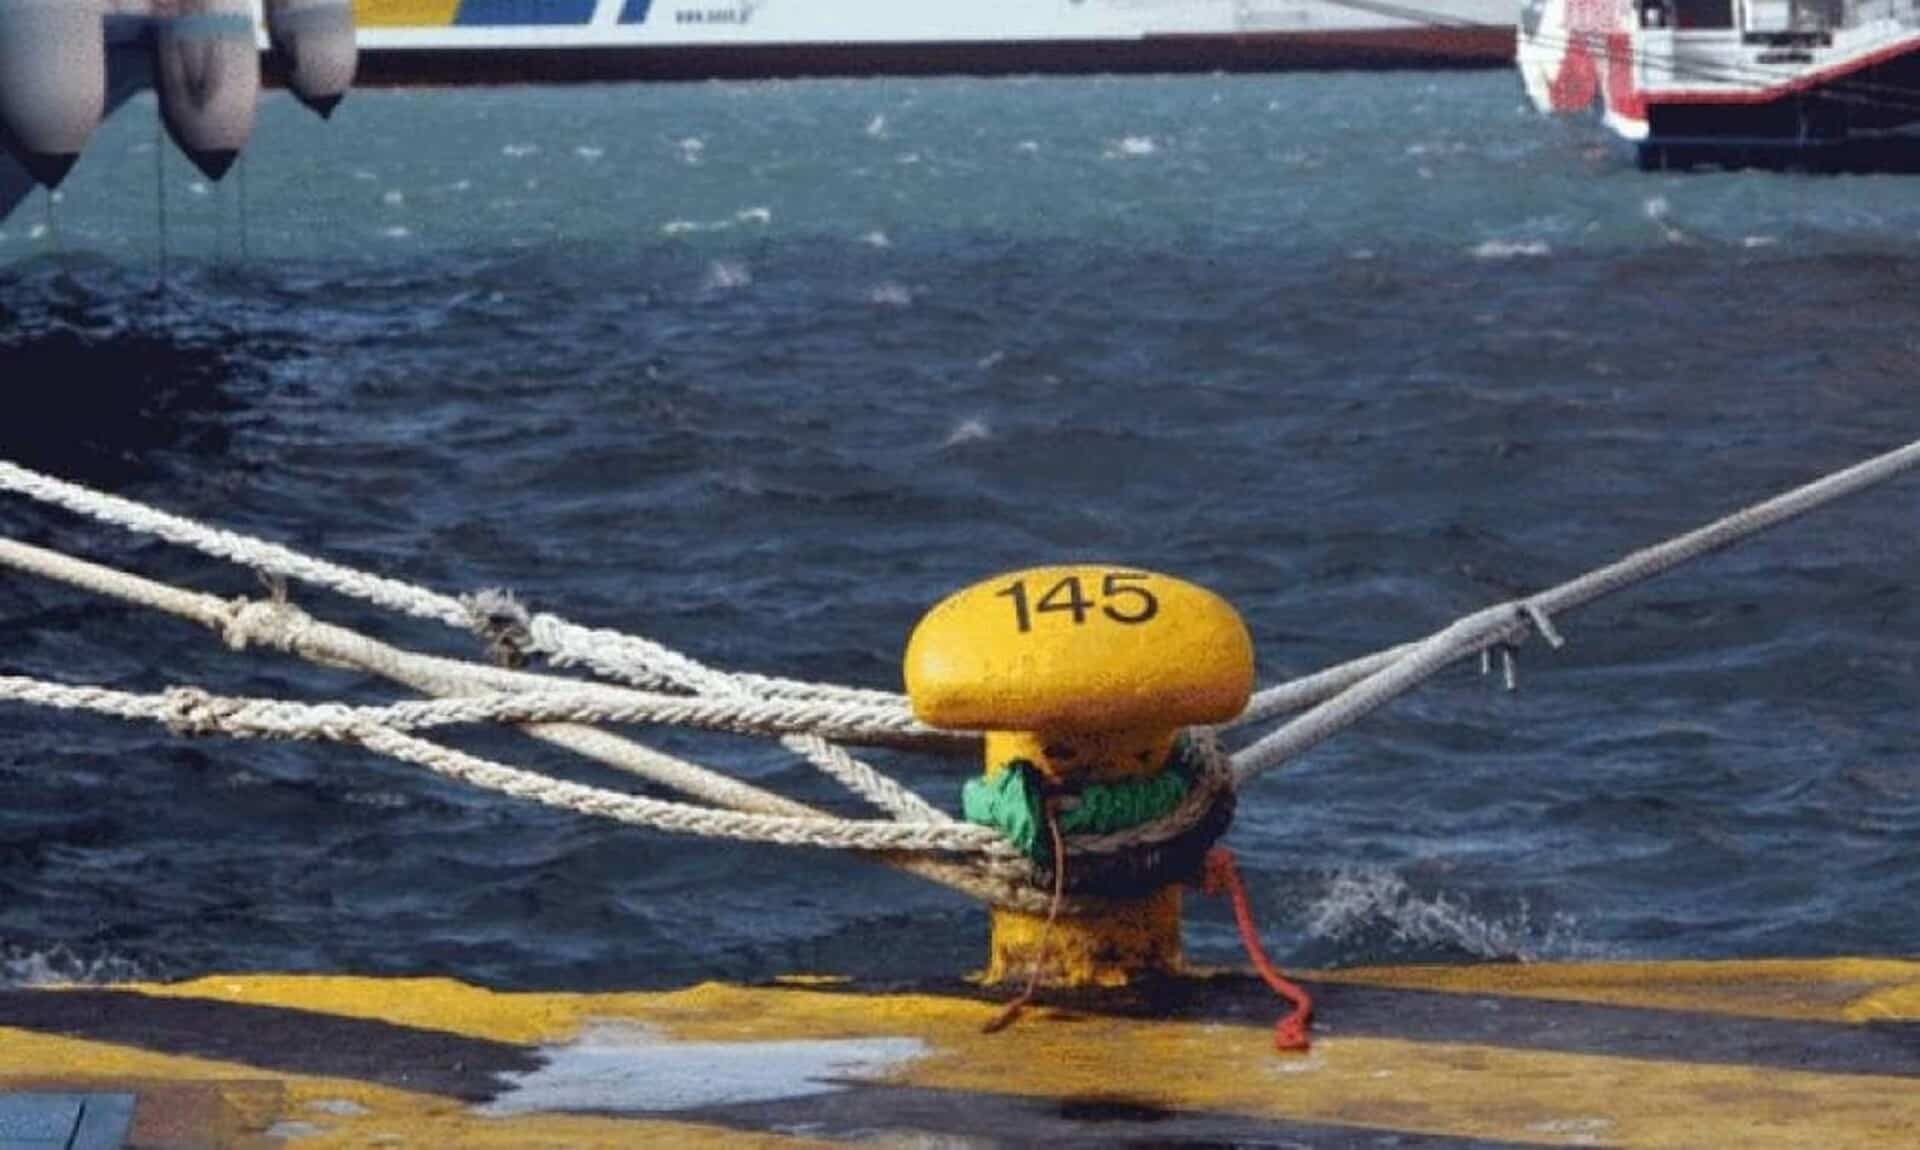 Χανιά: Νεκρός άντρας εντοπίστηκε μέσα στο πλοίο της γραμμής Πειραιάς – Χανιά